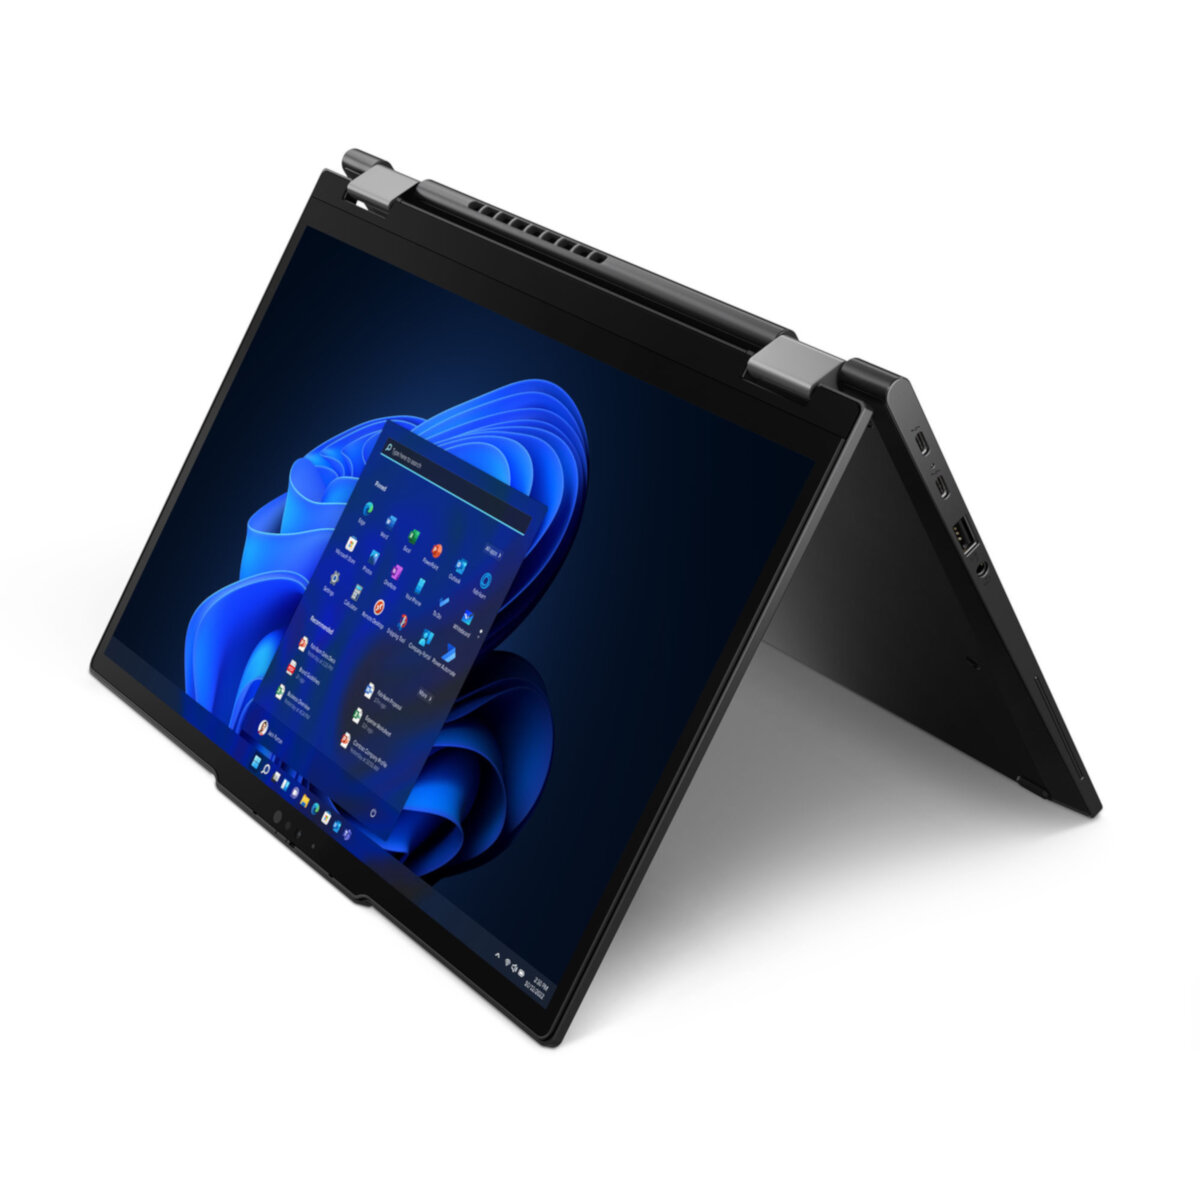 Laptop Lenovo ThinkPad X13 Yoga Gen 4 16/512GB po skosie w lewo rozłożony na pół z włączonym ekranem na białym tle